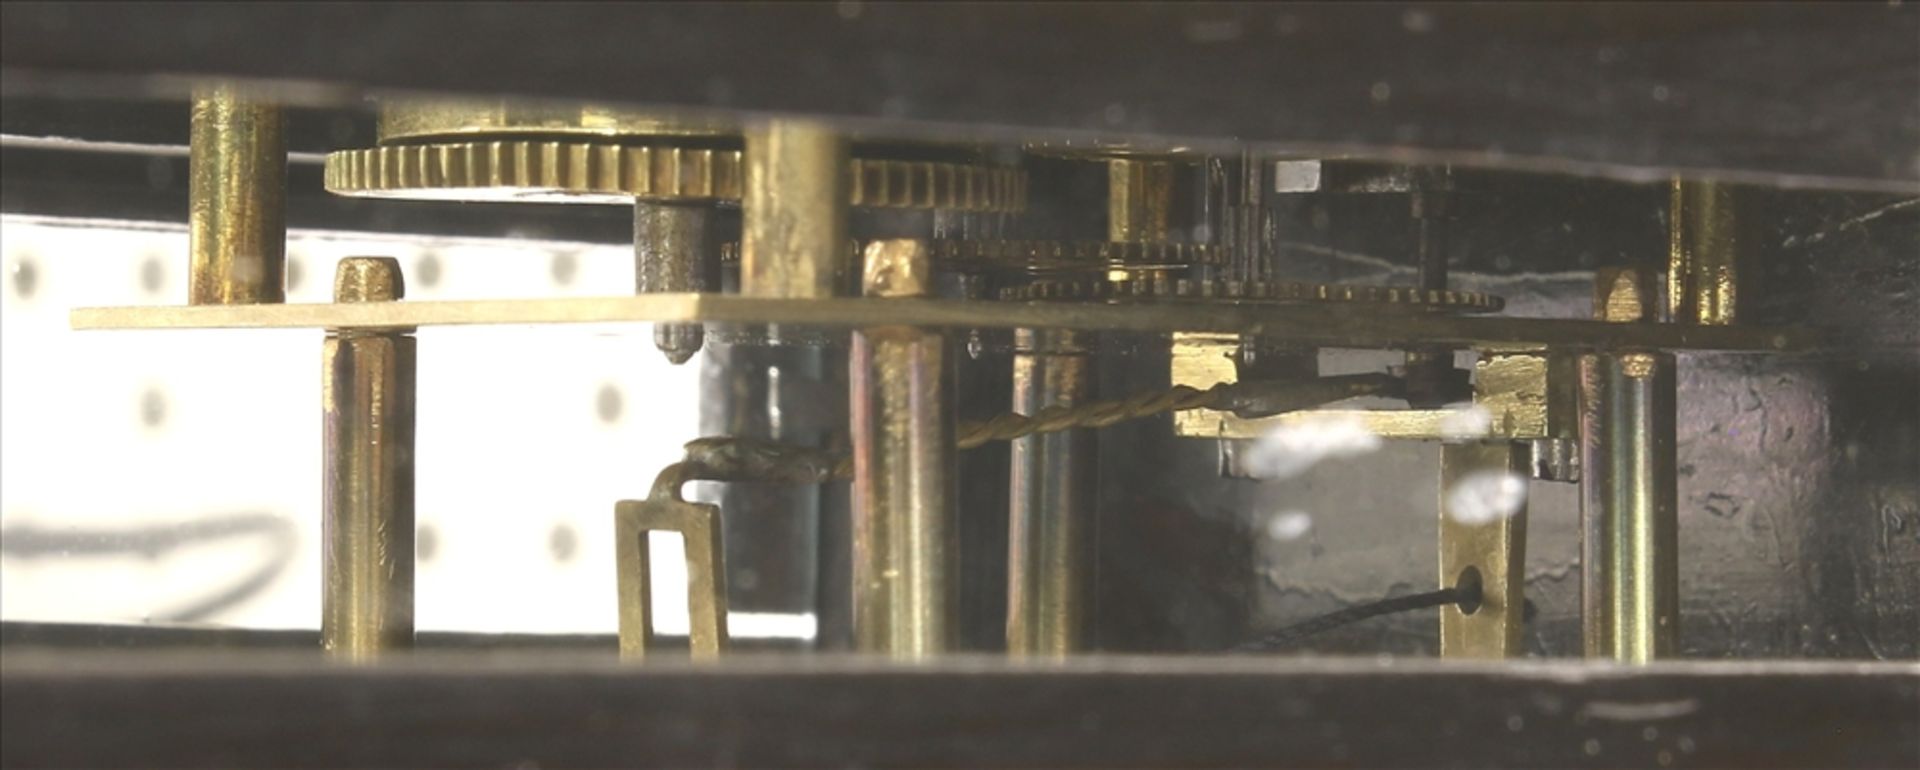 Miniatur Regulator Wohl Schwarzwald 19. Jh. Dreiseitenverglastes ebonisiertes Holzgehäuse mit - Bild 2 aus 5